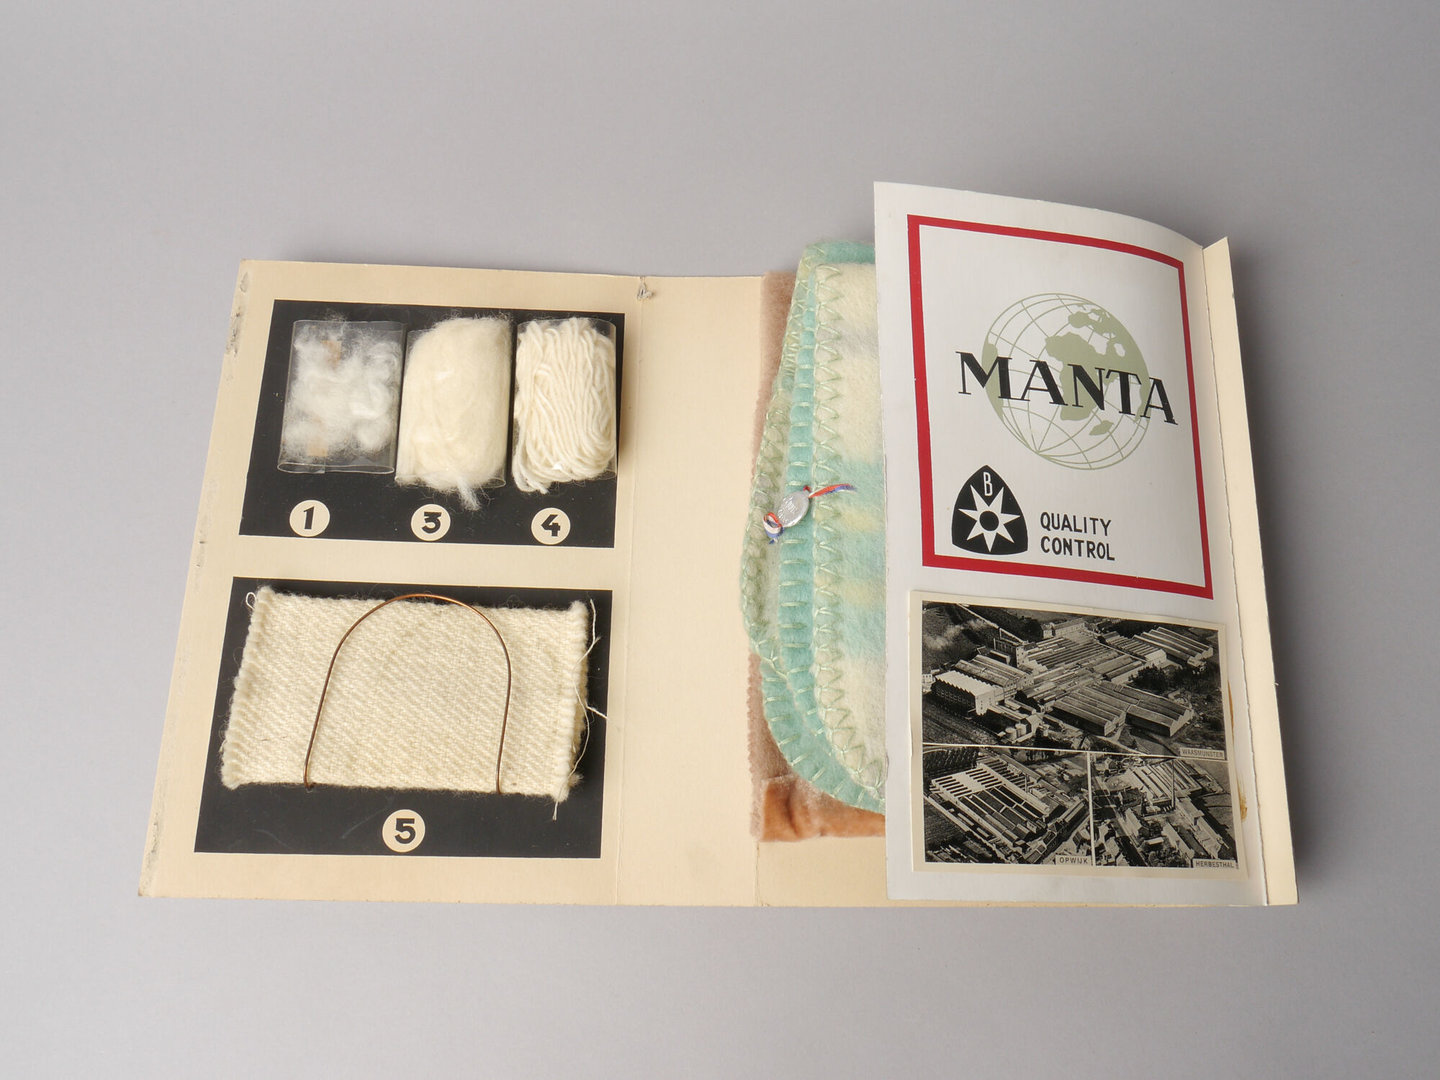 Staalkaart verspreid als reclame voor dekens geproduceerd door Manta in Waasmunster